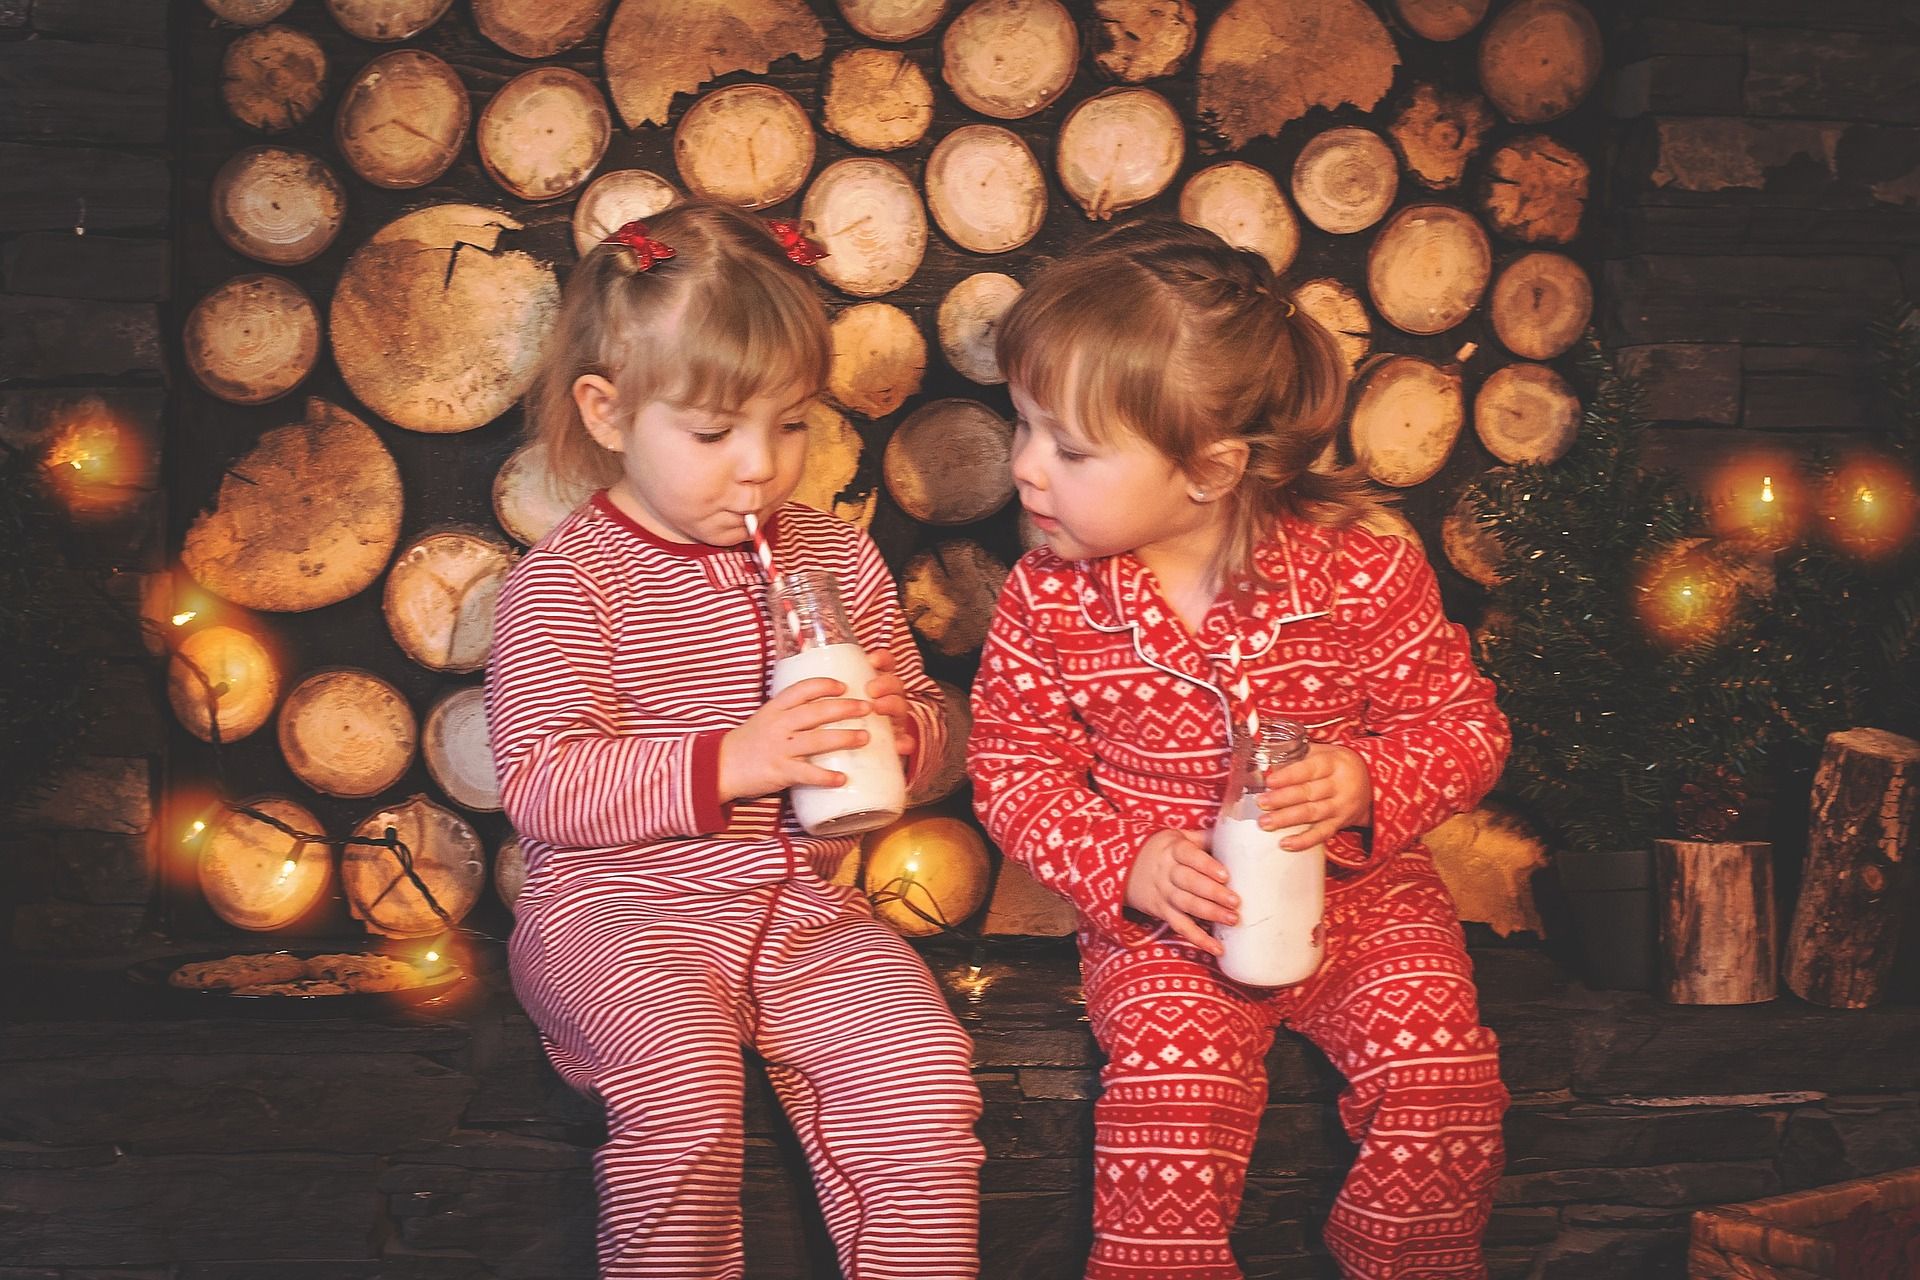 La leche idónea es la natural sin azúcar, ni edulcorantes, y con toda su grasa / Foto: Candice Rose - Pixabay